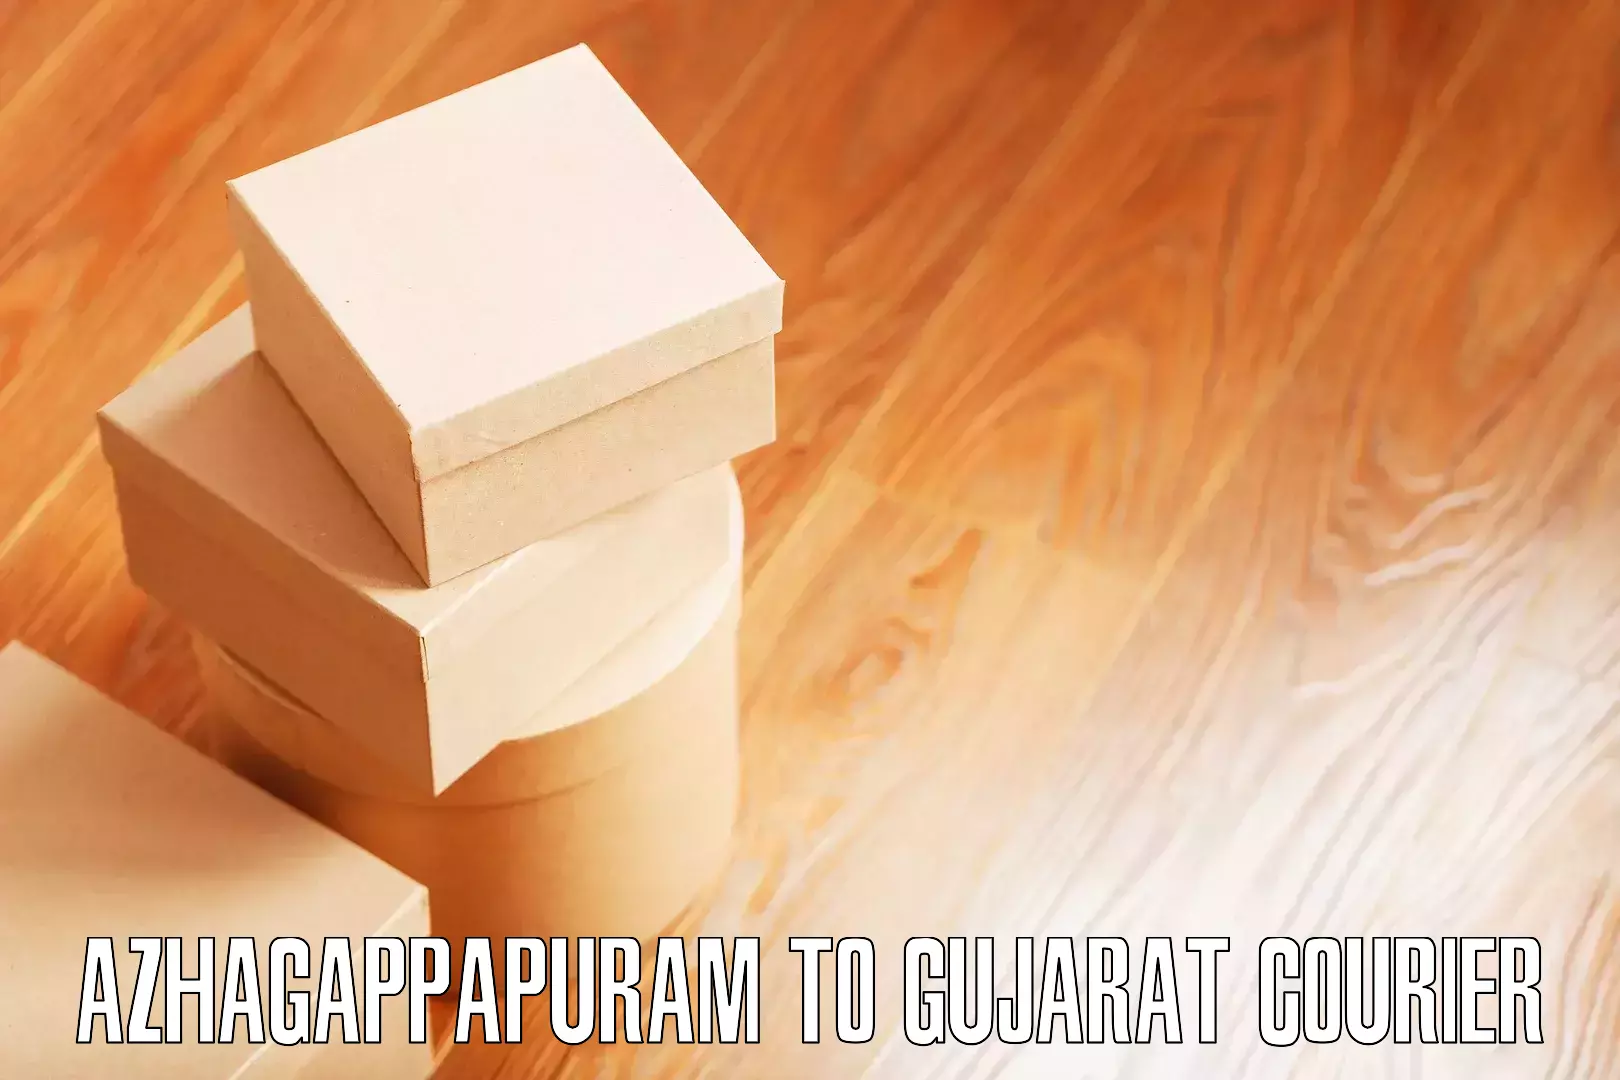 Furniture transport specialists Azhagappapuram to Gujarat